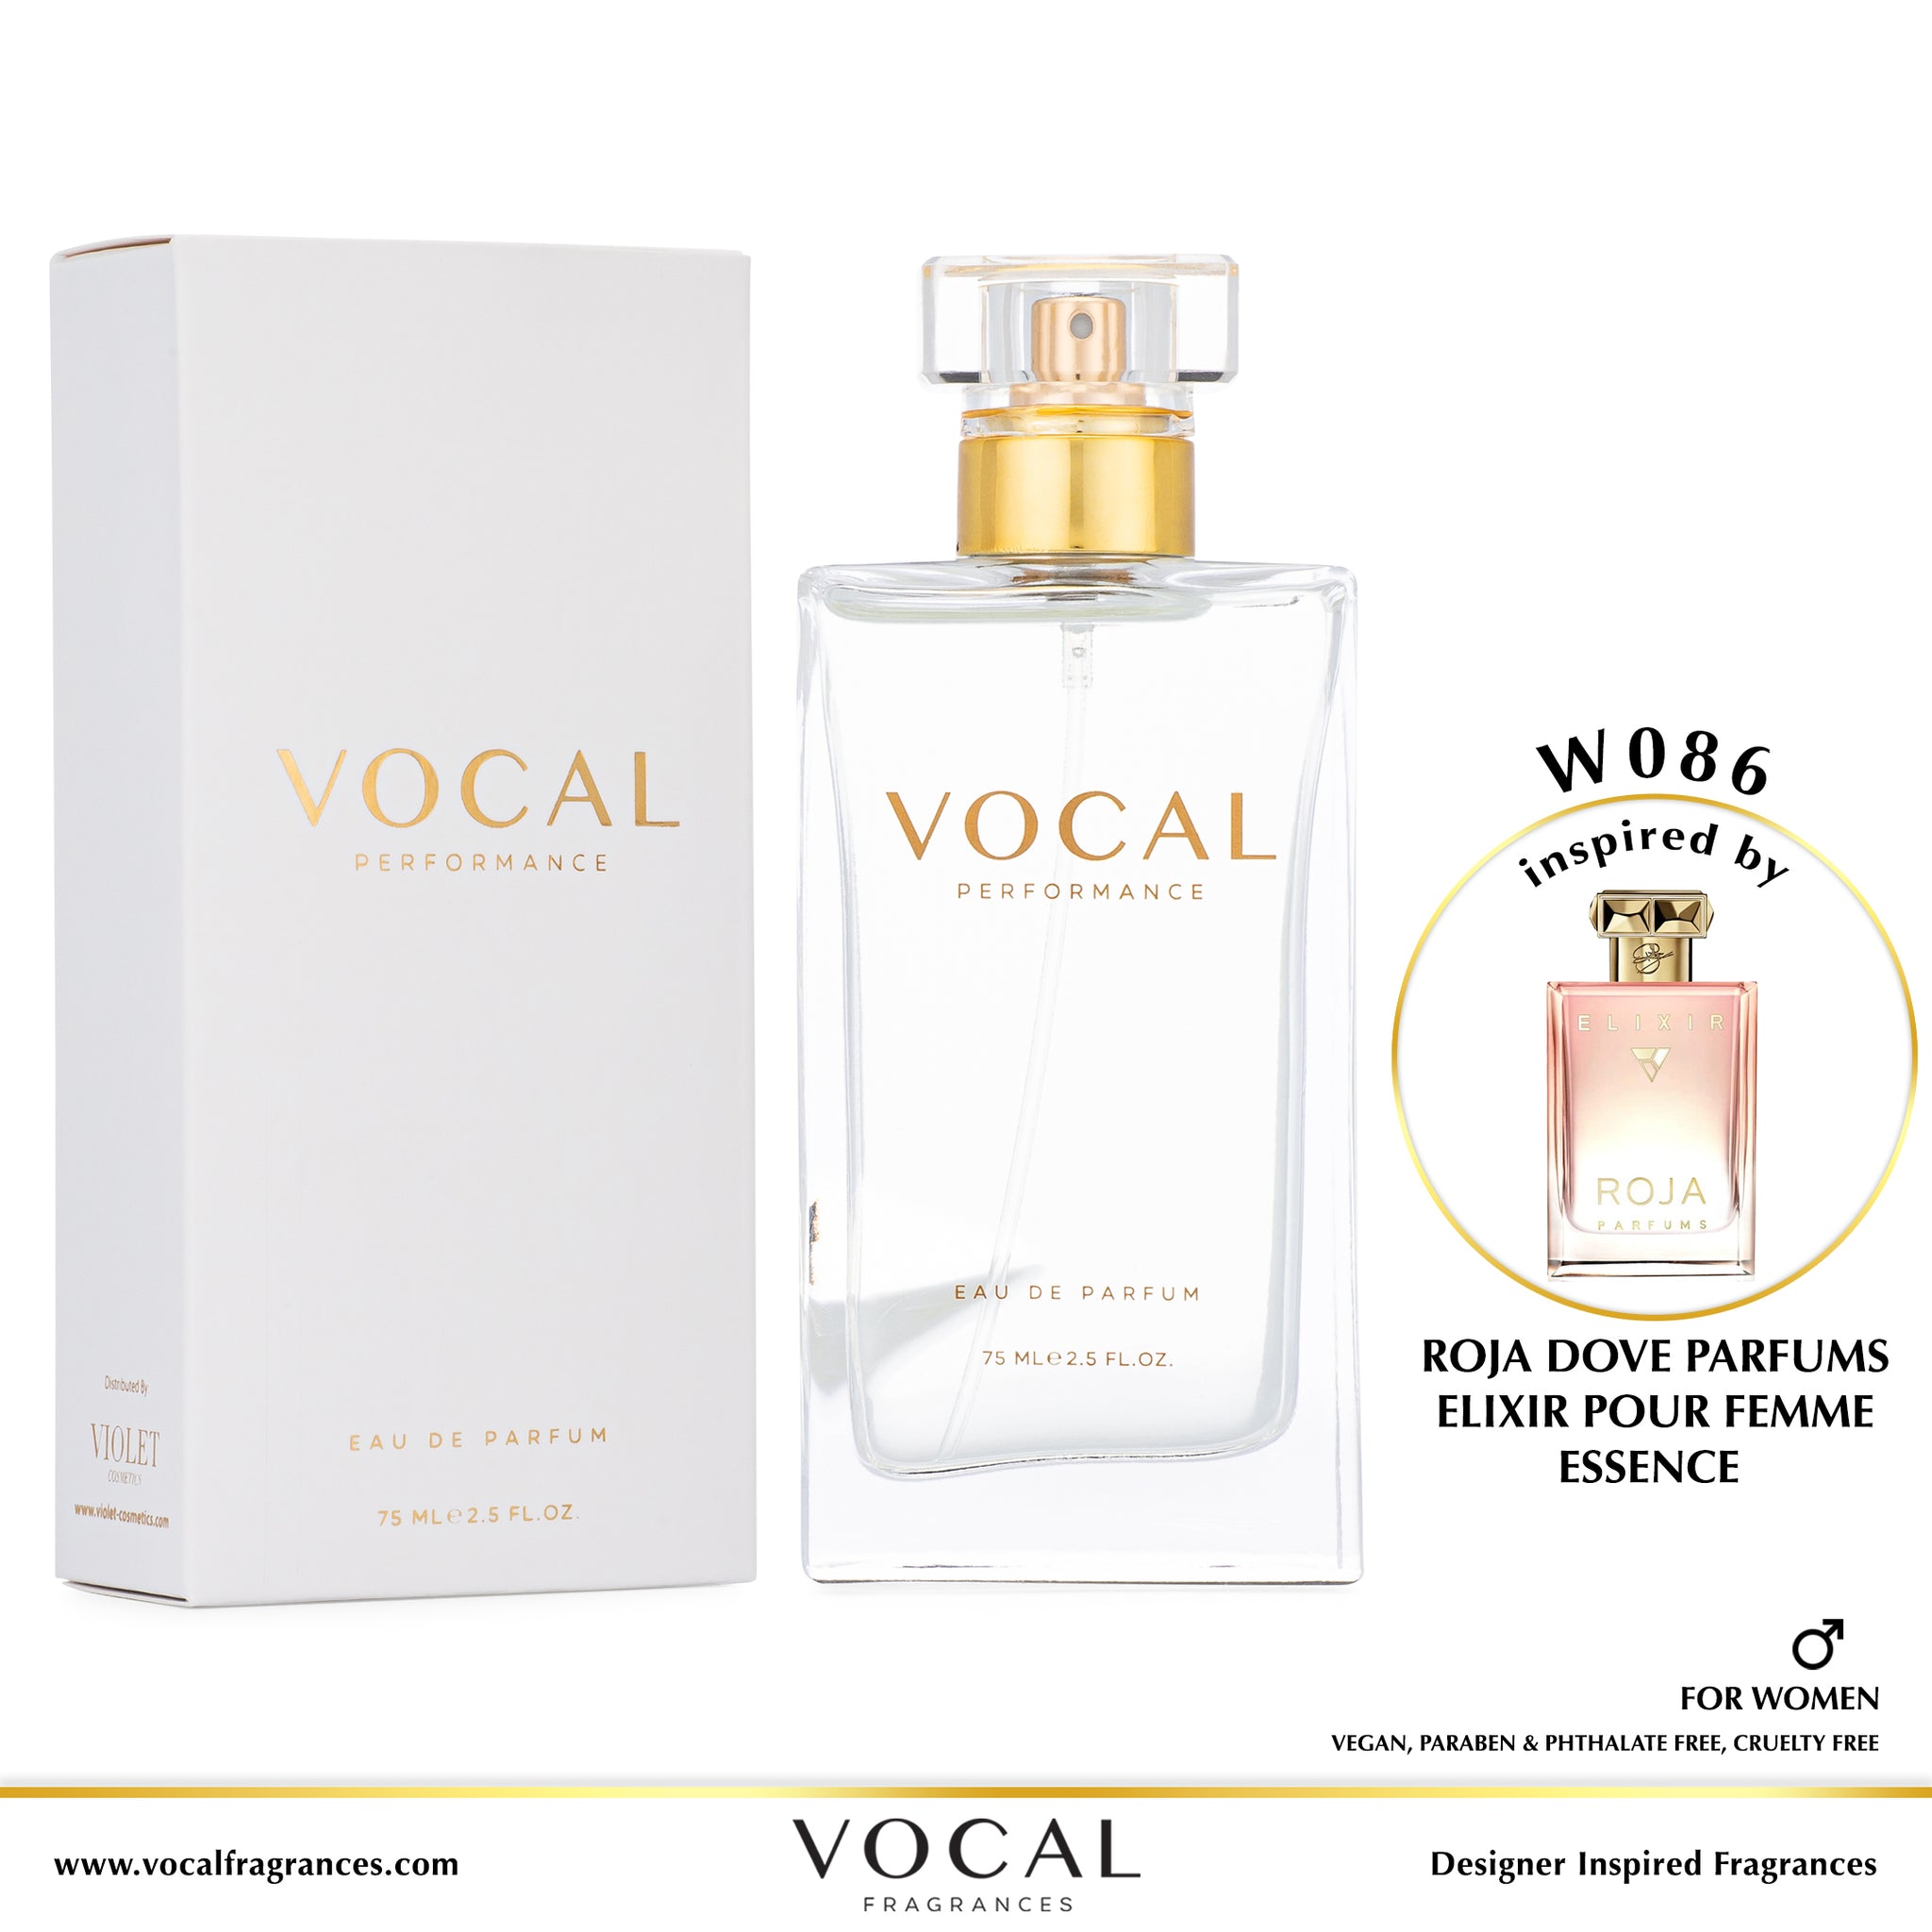 W086 Vocal Performance Eau De Parfum For Women Inspired by Roja Dove Parfums Elixir Pour Femme Essence